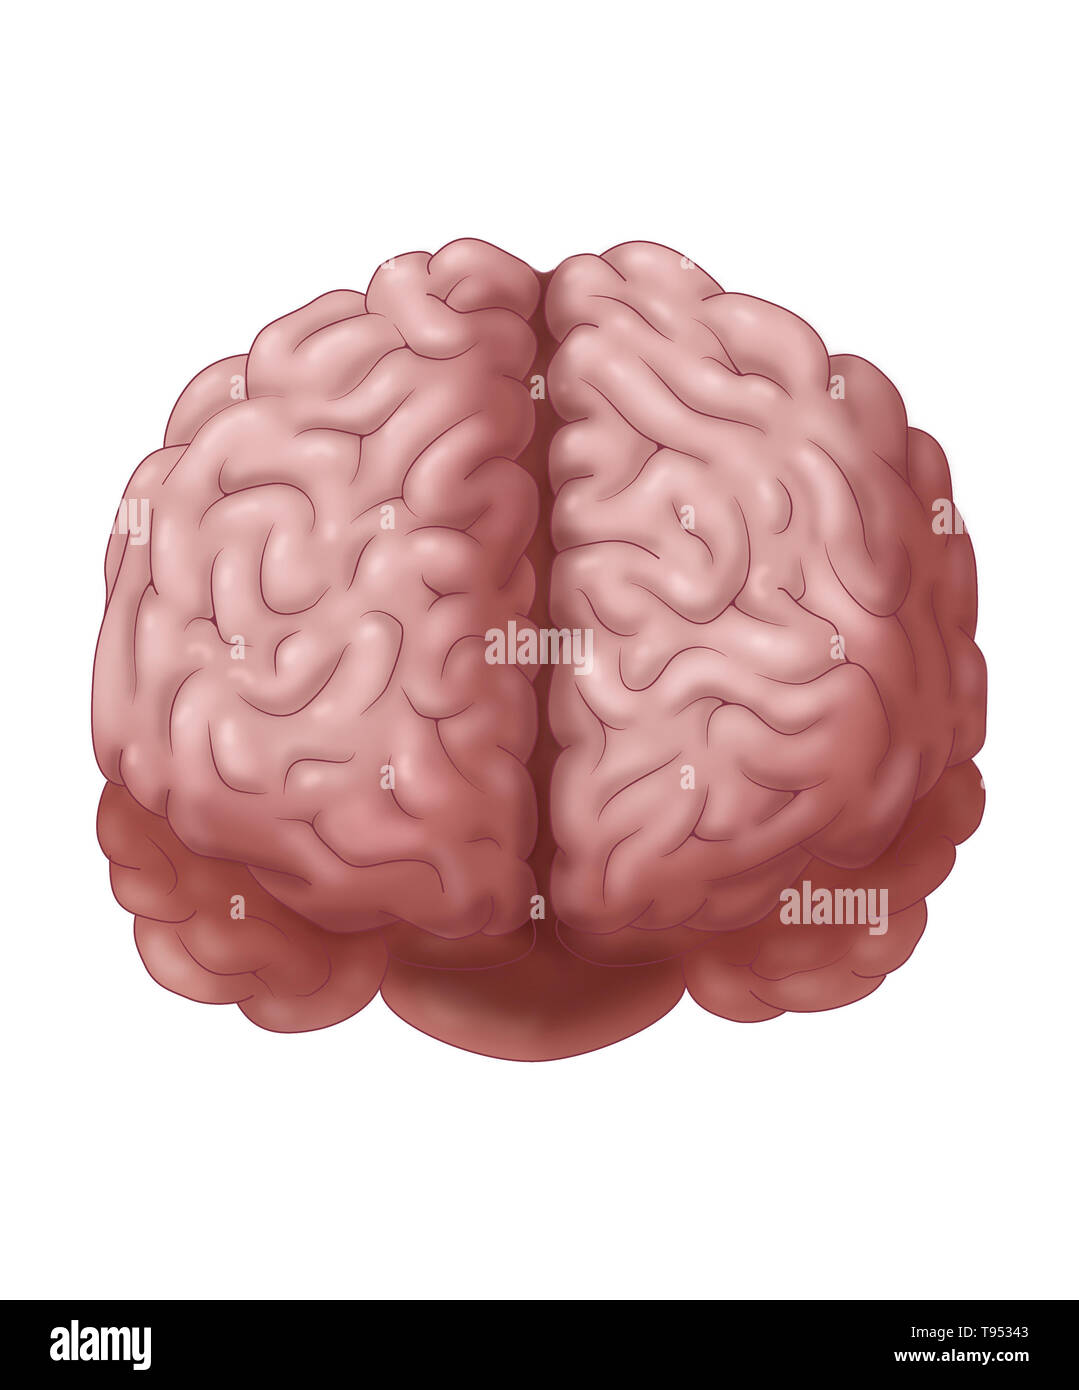 Für eine frontale Ansicht des Gehirns. Stockfoto